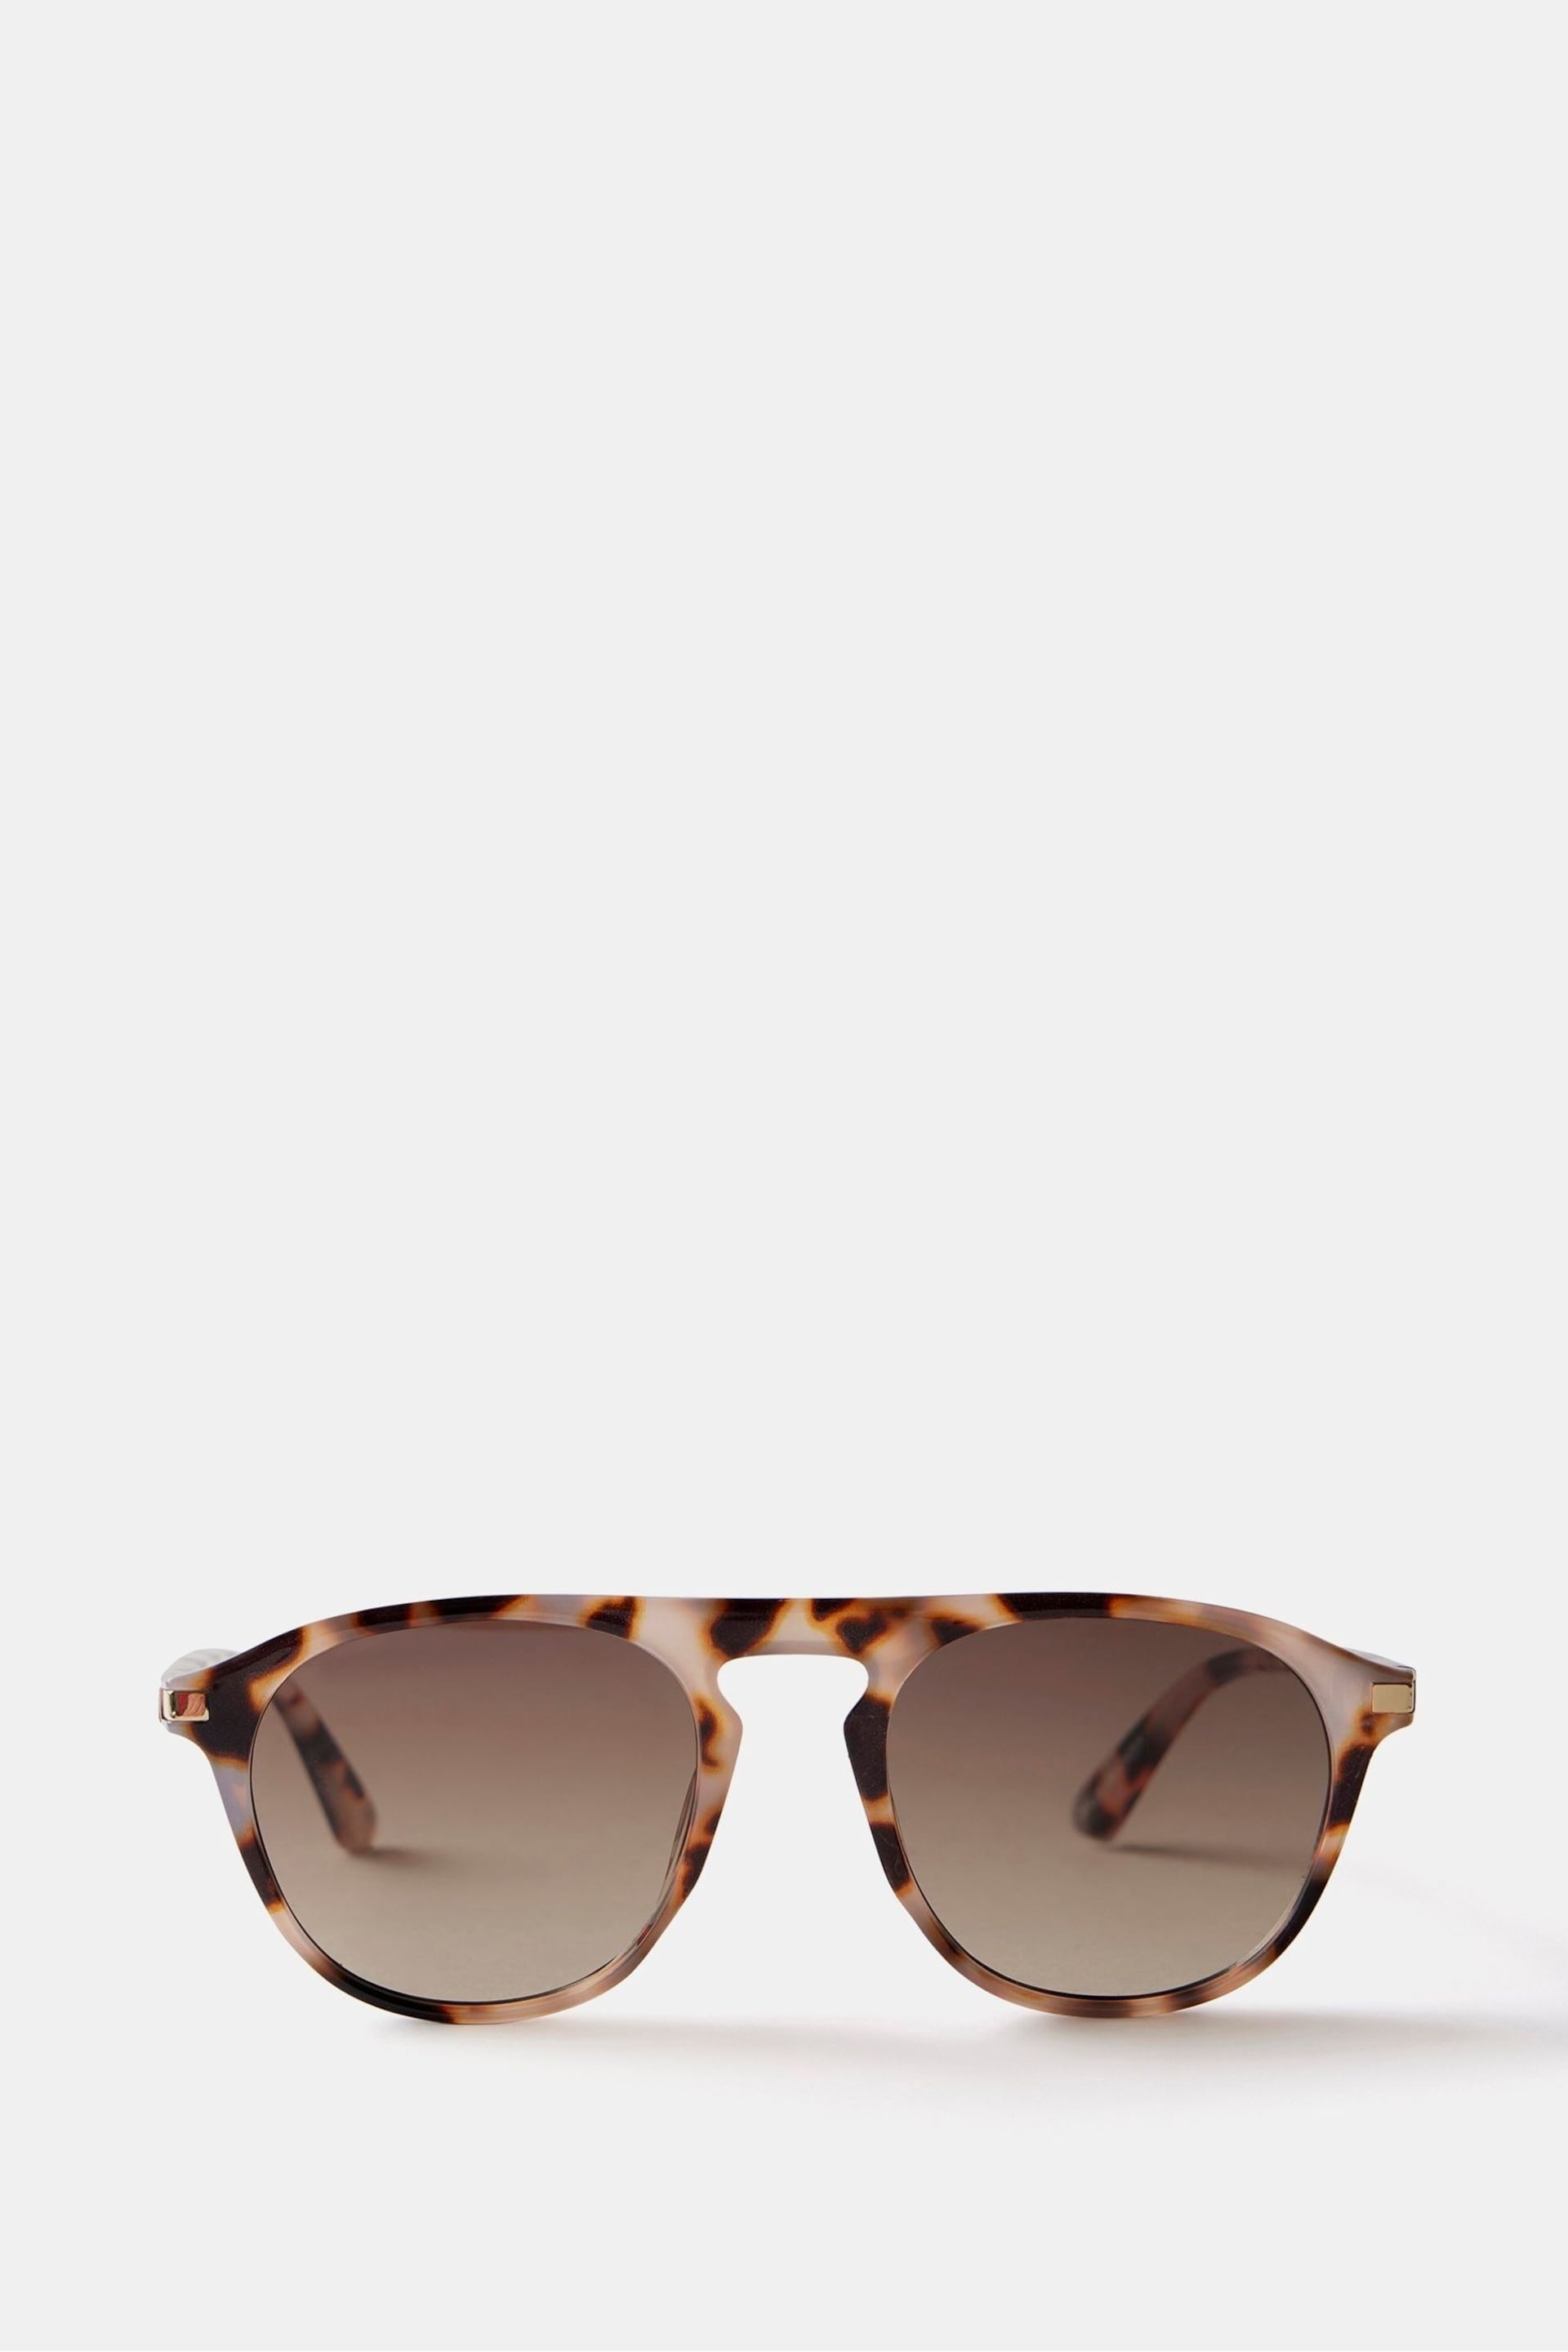 Mint Velvet Brown Tortoiseshell Sunglasses - Image 6 of 6